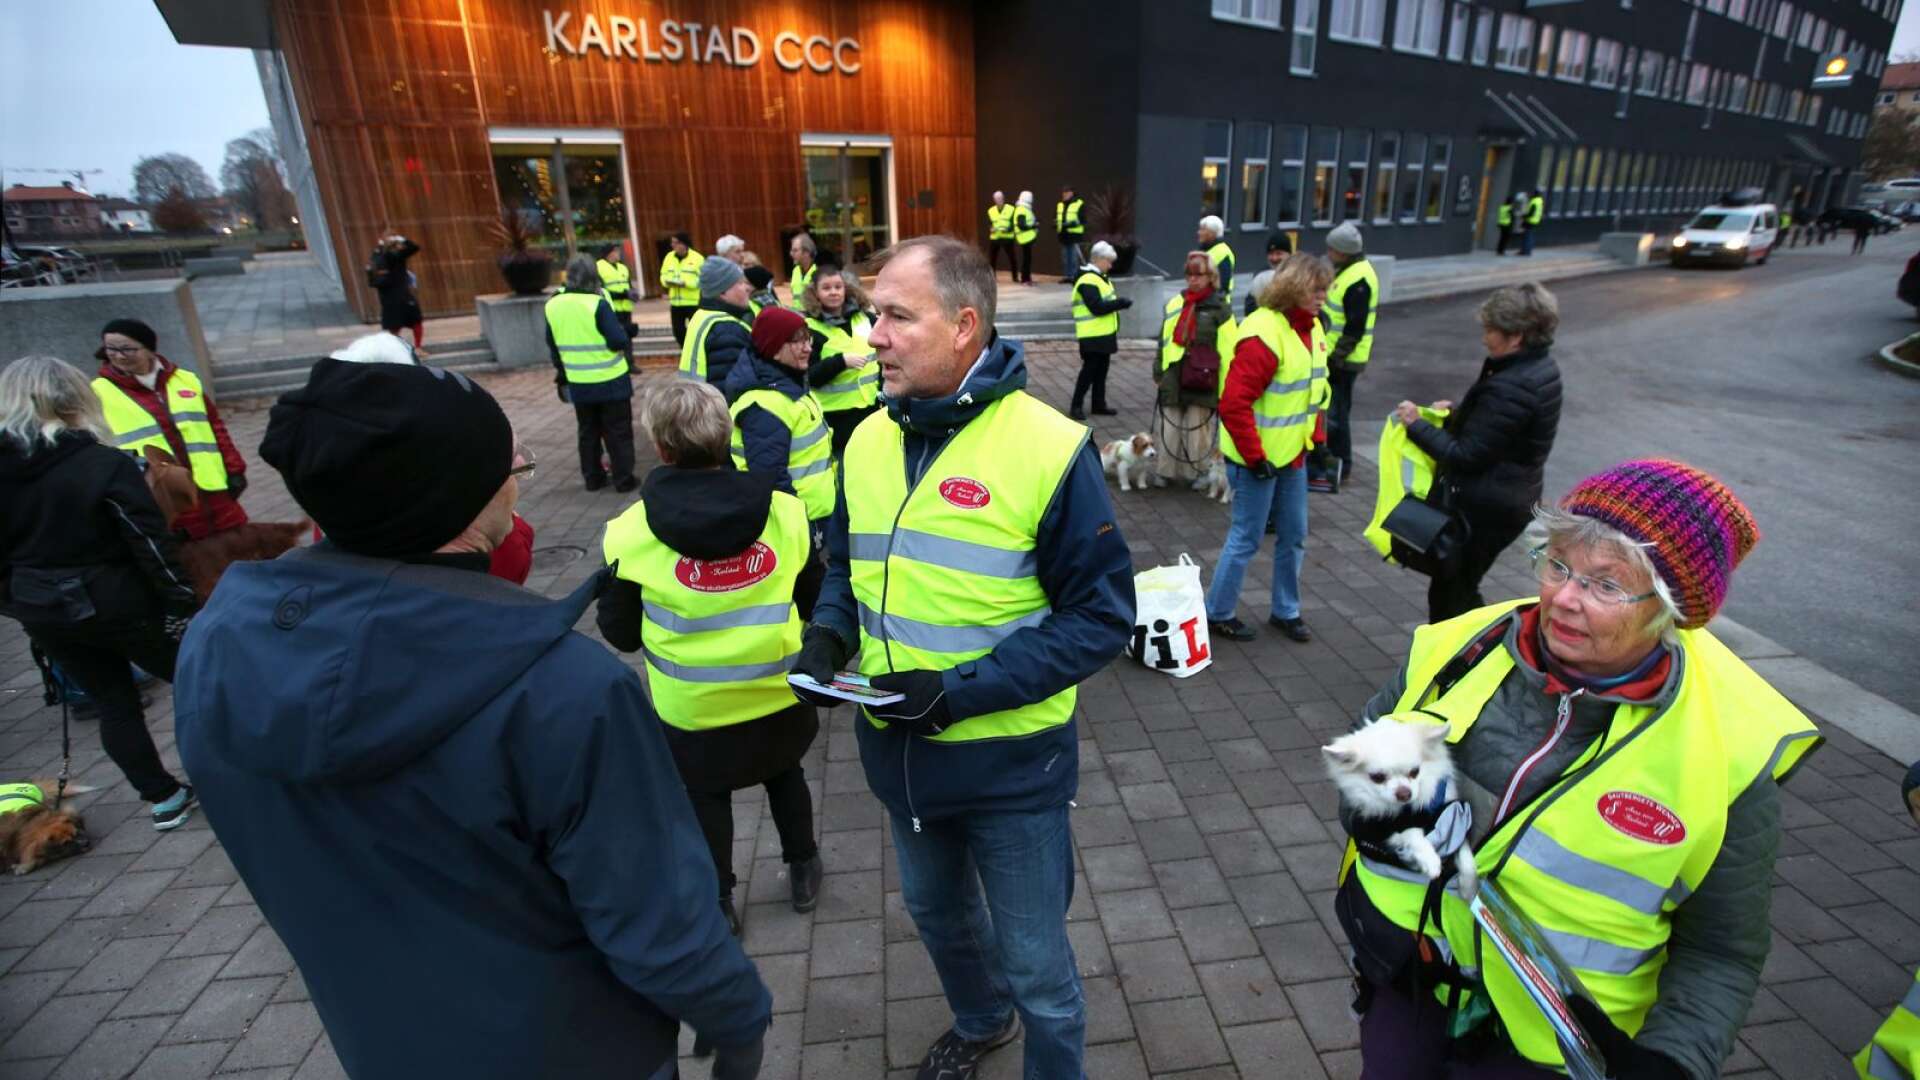 Skutbergets Wenner manifesterade utanför Karlstad CCC när besökare till Besöksnäringsdagarna anlände. I mitten Thomas Martinsson, föreningens ordförande.